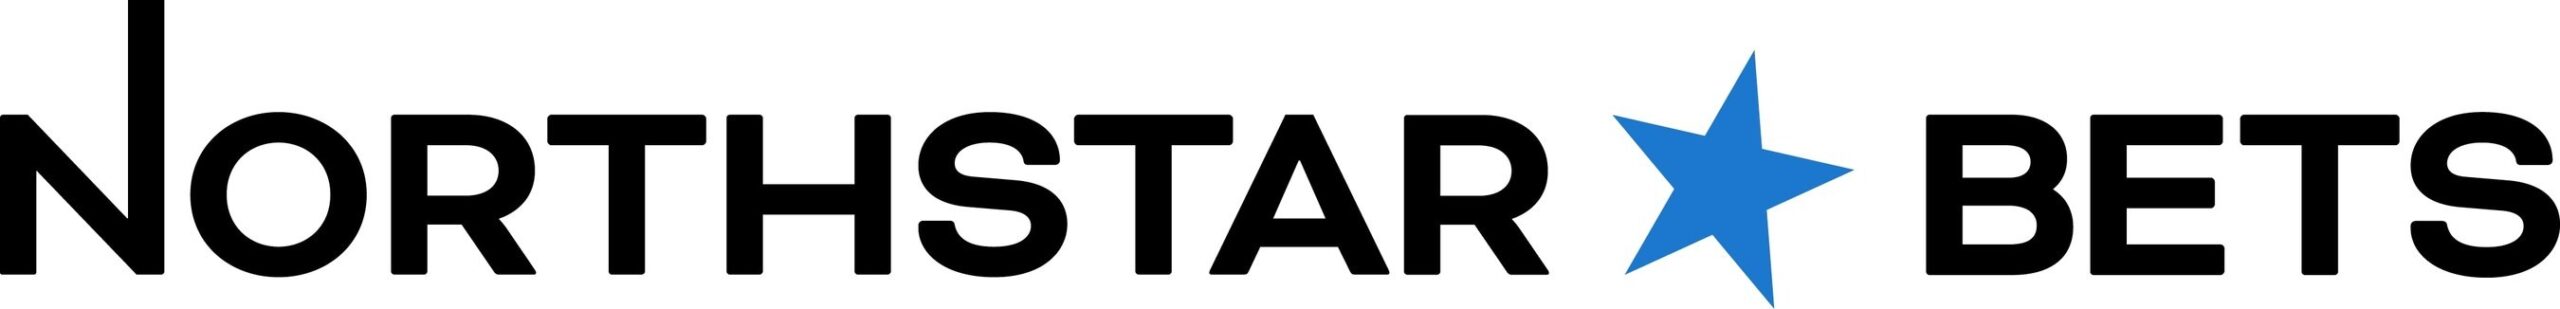 NorthStar Bets Mobile App Logo